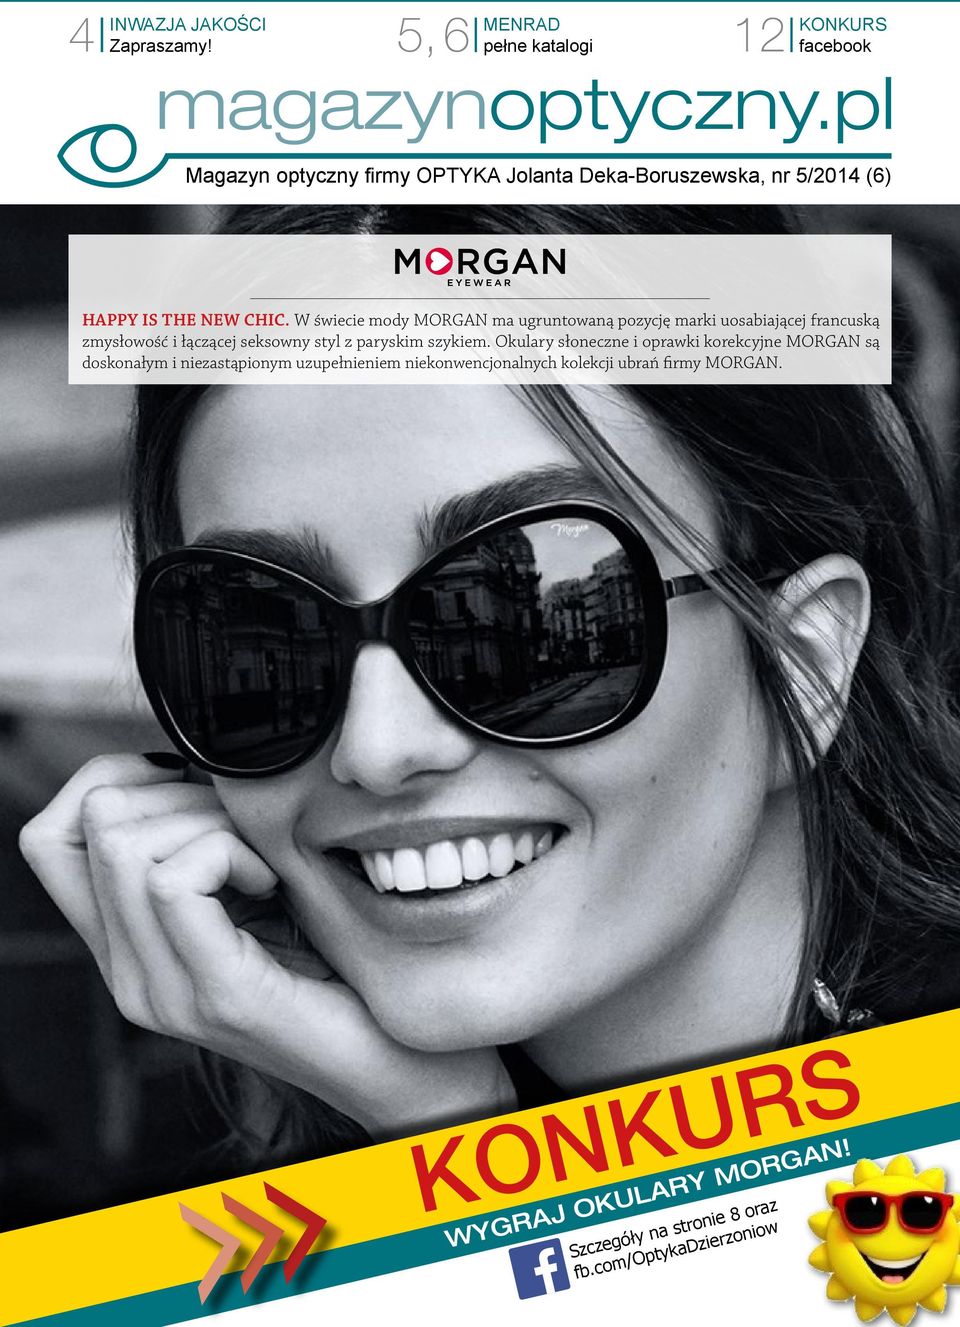 W świecie mody MORGAN ma ugruntowaną pozycję marki uosabiającej francuską zmysłowość i łączącej seksowny styl z paryskim szykiem.